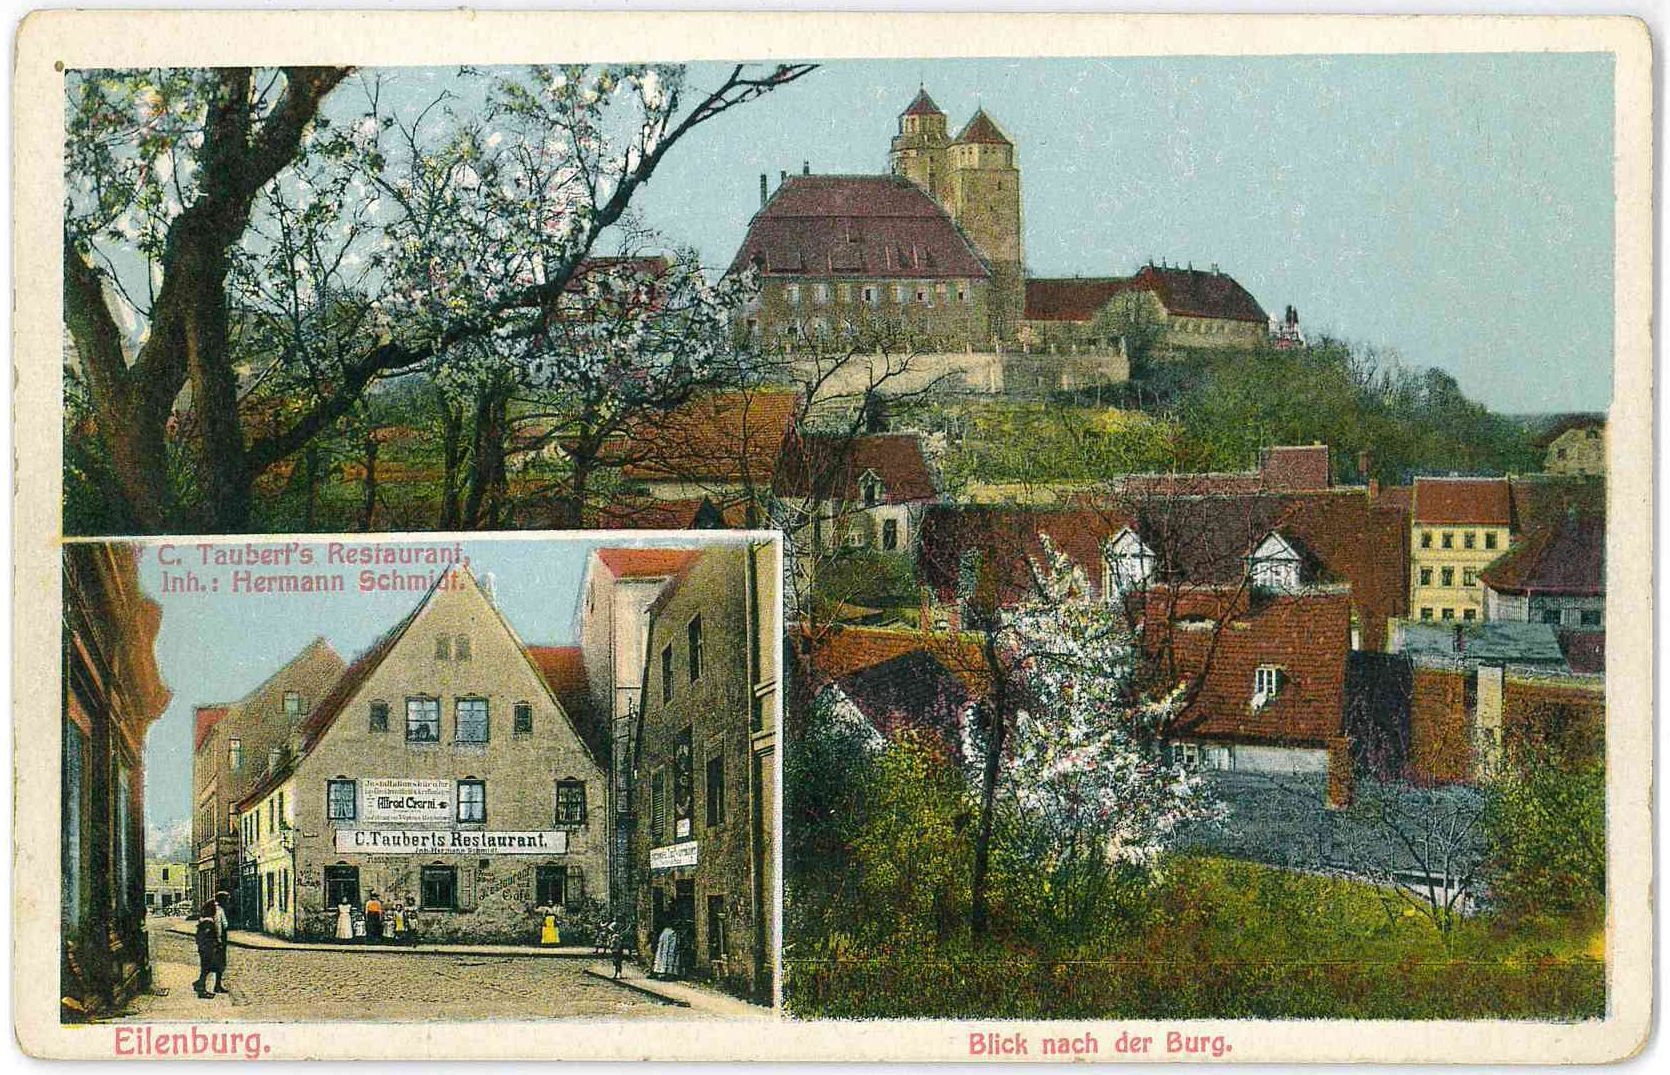 Eilenburg. Blick nach der Burg. (Stadtmuseum Eilenburg RR-P)